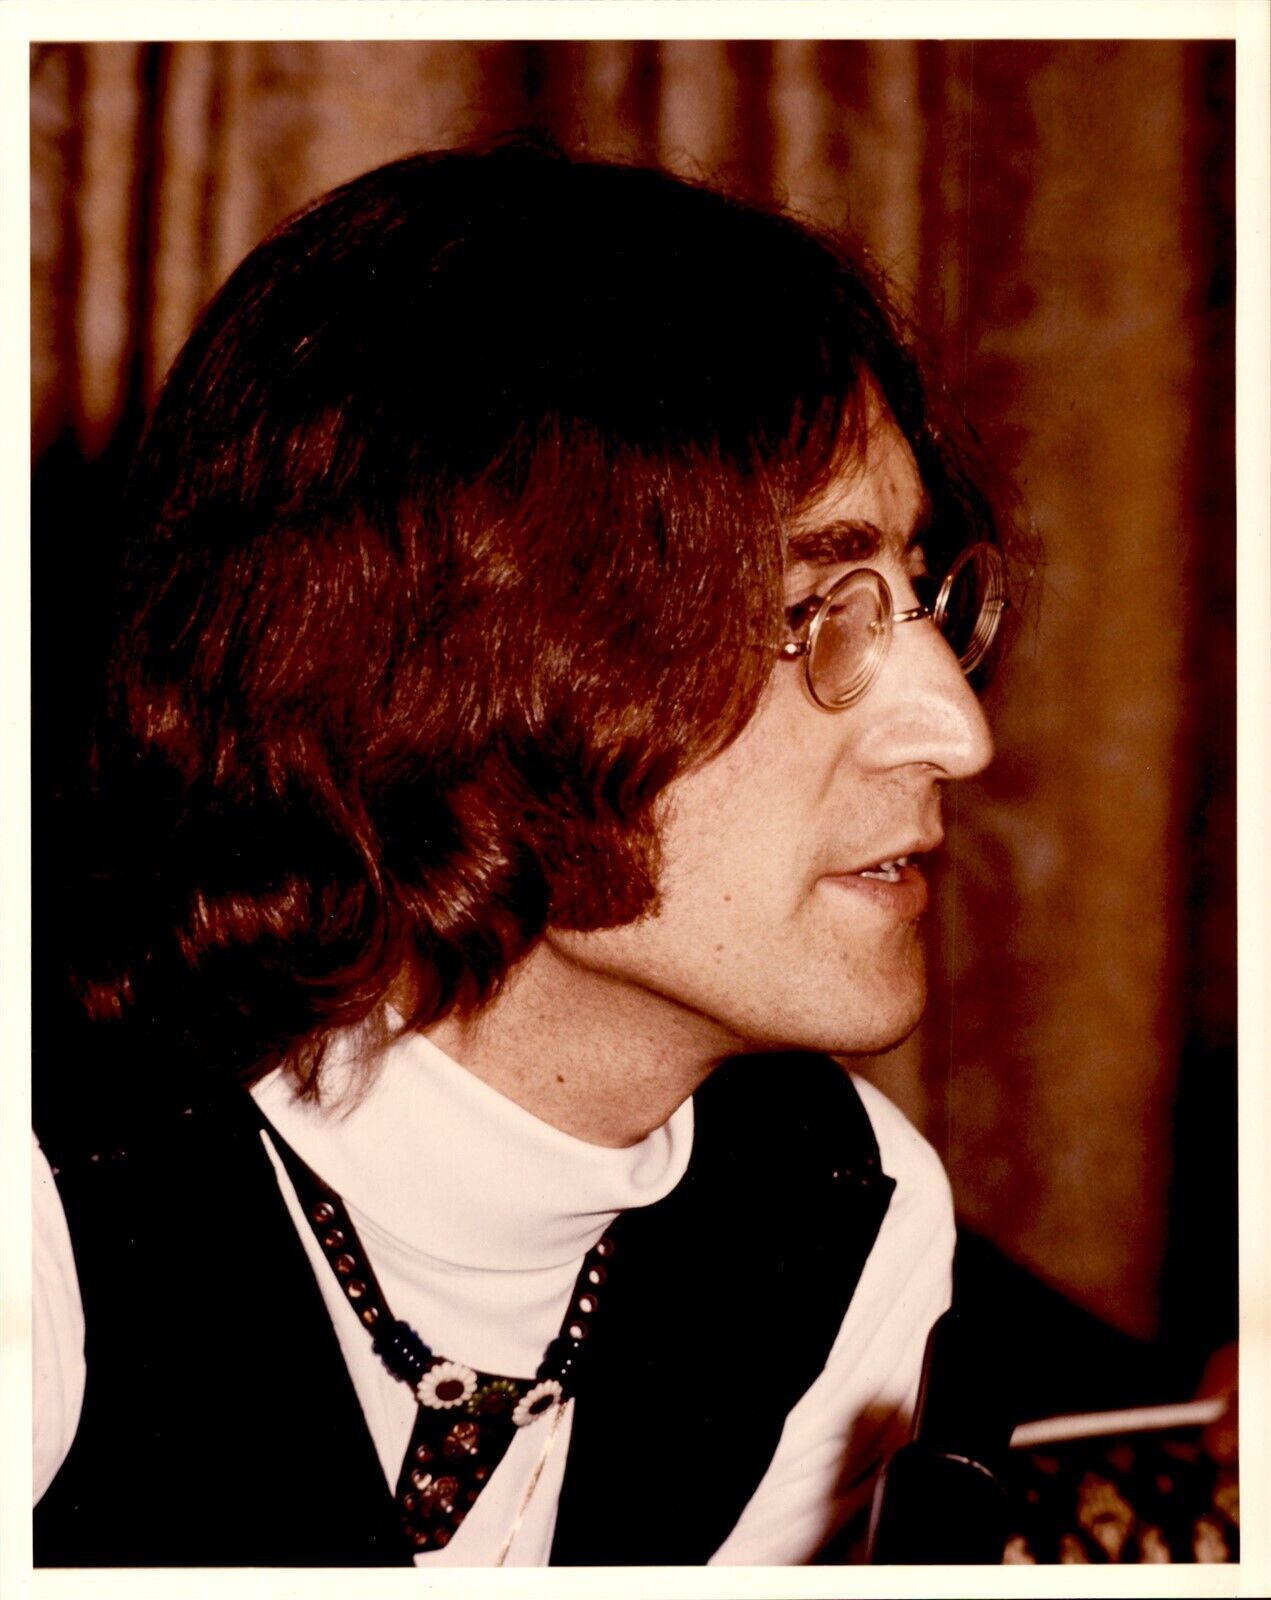 BR1 70s Vintage Color Photo JOHN LENNON The Beatles Singer Songwriter Musician